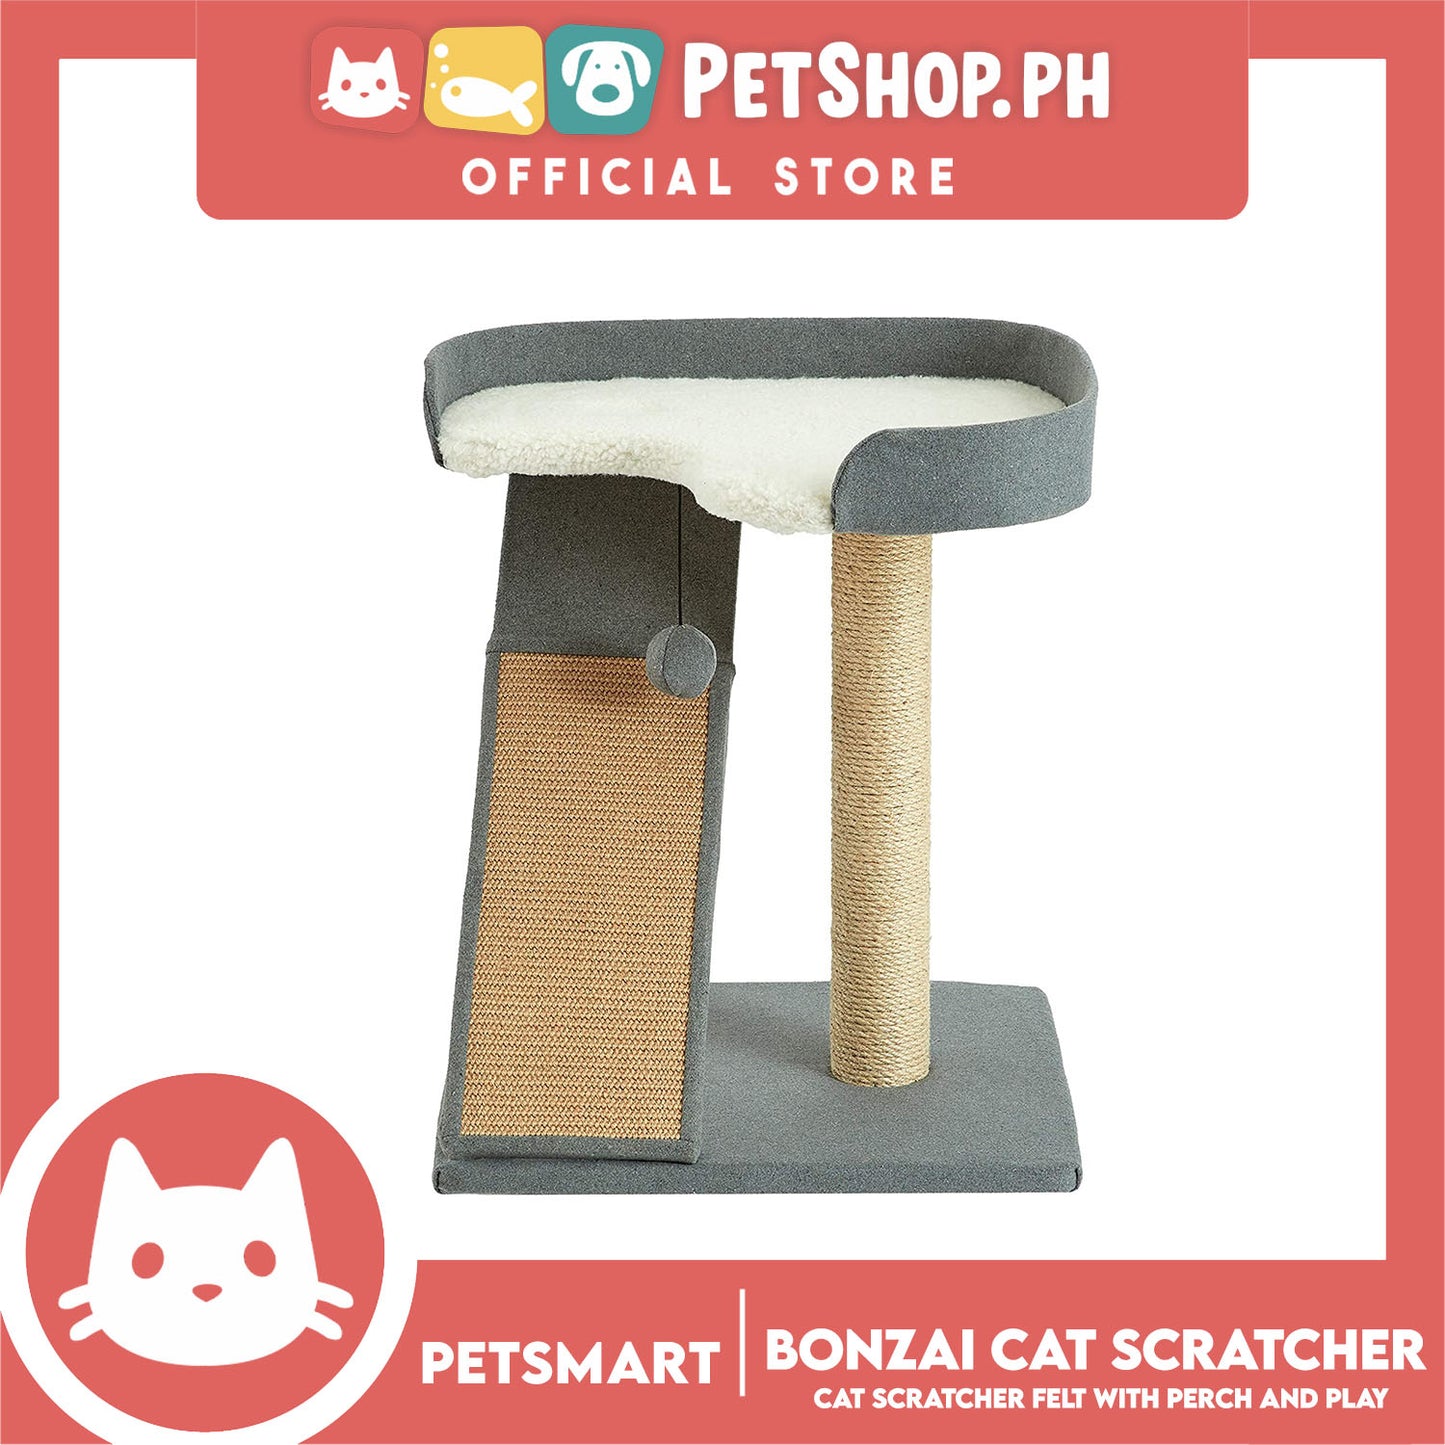 Bonzai Cat Scratcher Felt With Perch And Play 40cm x 47cm x 58cm (Diana 911122) Premium Cats Scratcher Sisal Scratch, Pet Furniture Cats, Cats Climbing Tower, Pet Cats Scratcher